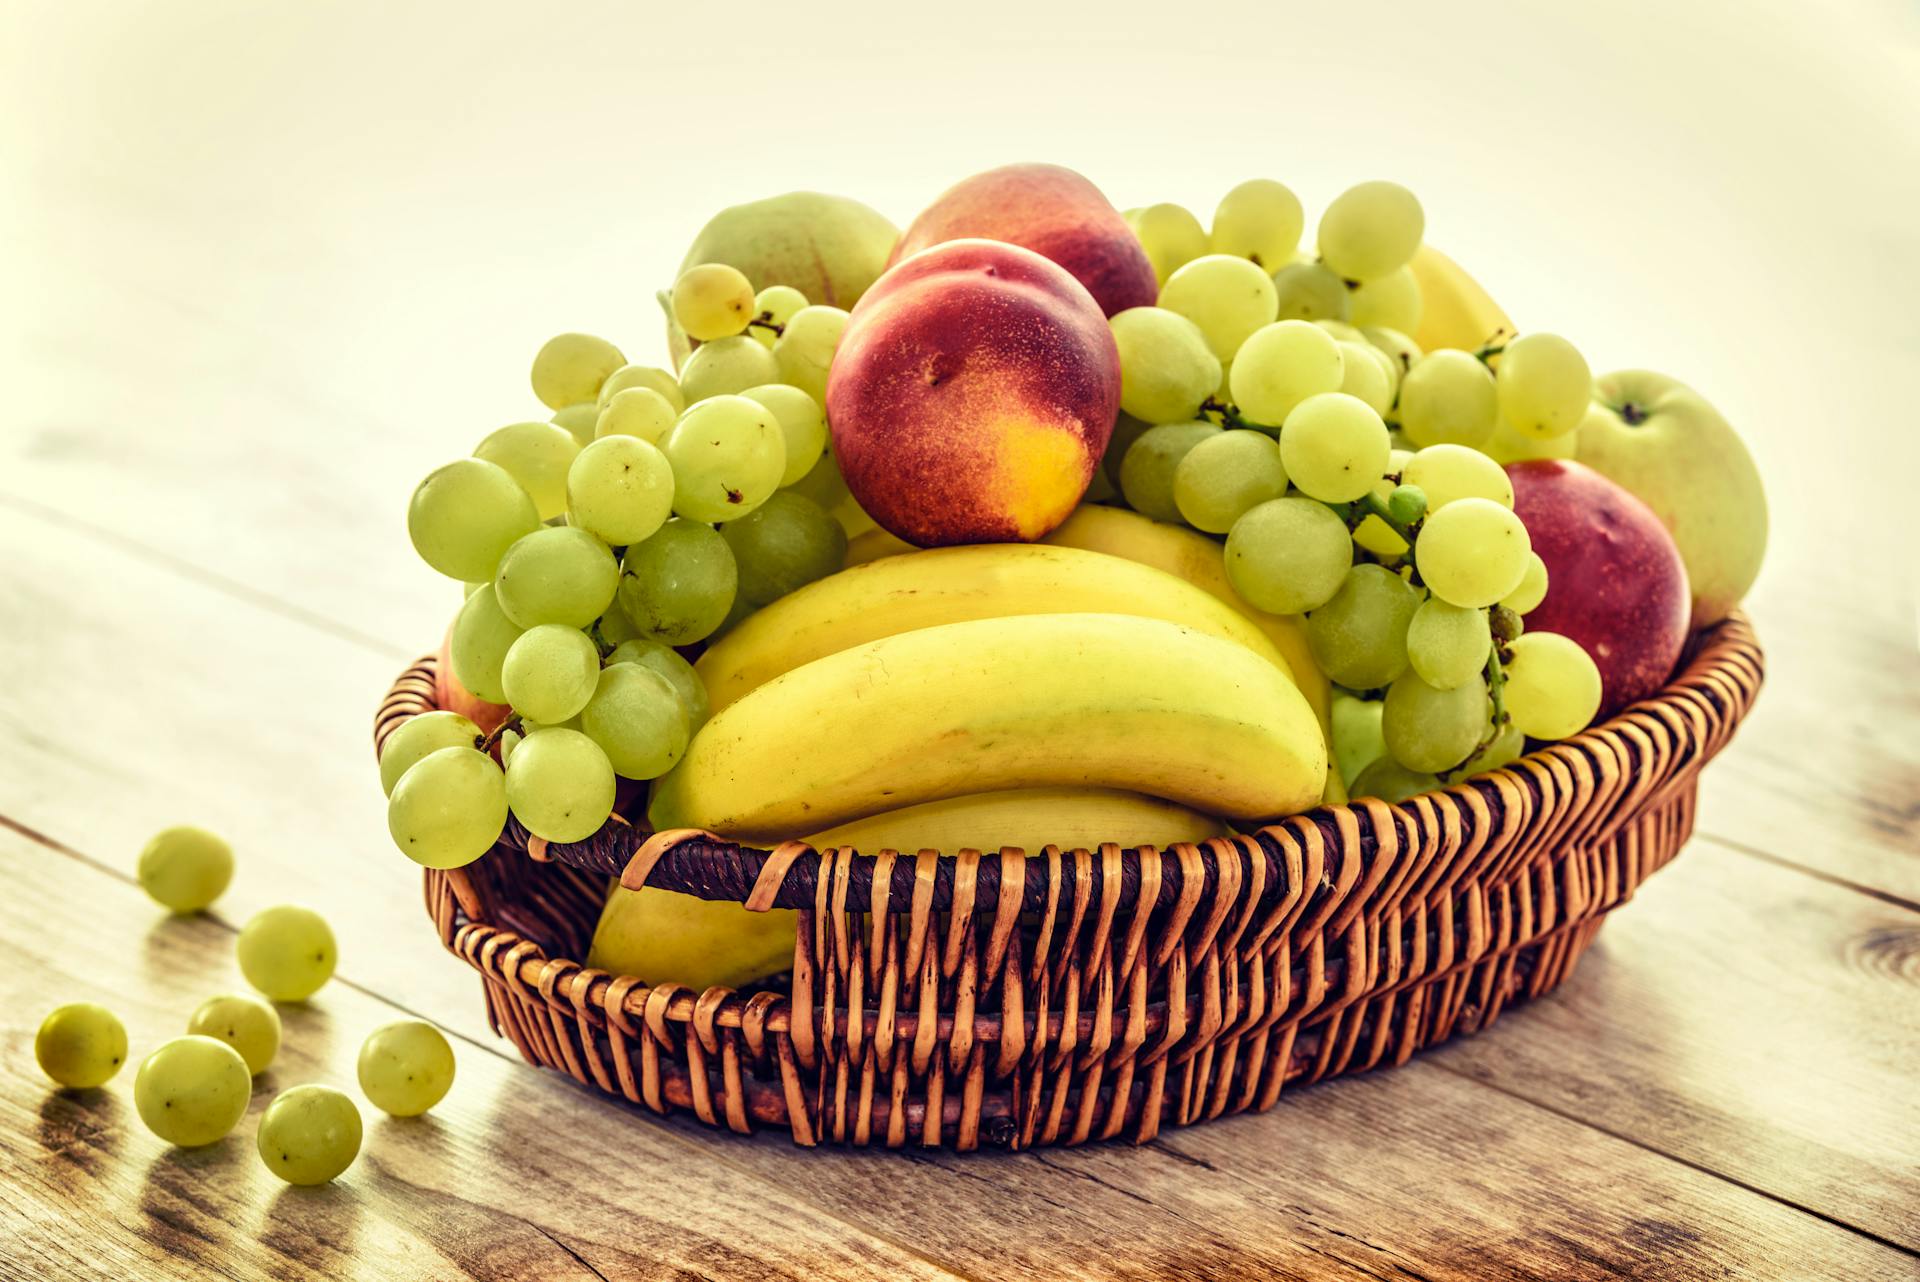 A basket of fruit | Source: Pexels